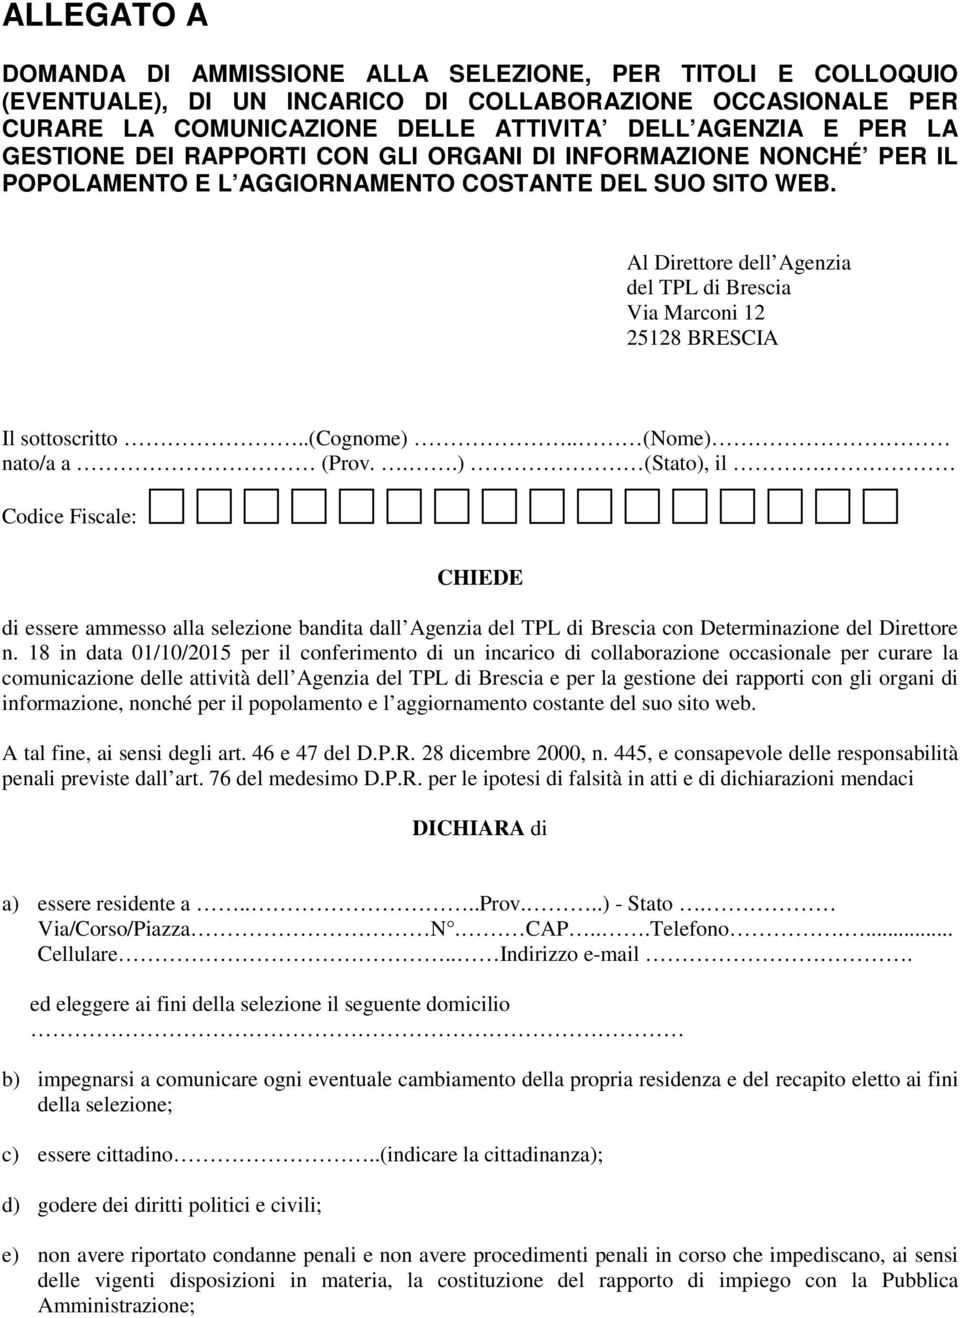 Al Direttore dell Agenzia del TPL di Brescia Via Marconi 12 25128 BRESCIA Il sottoscritto..(cognome).. (Nome) nato/a a (Prov...) (Stato), il.